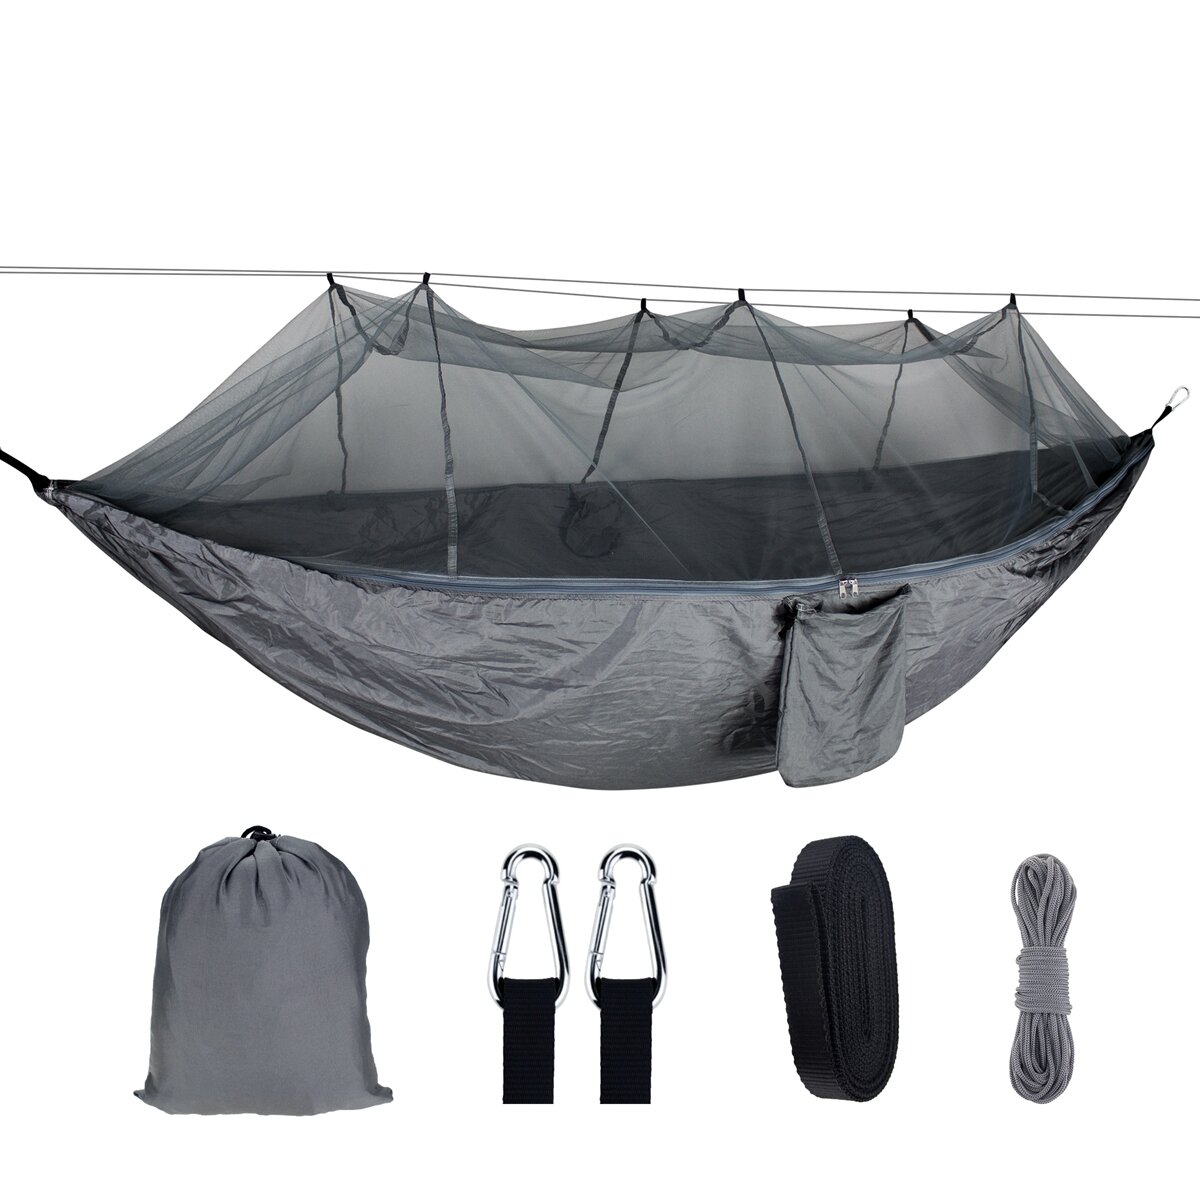 1-2 Kişi ile Taşınabilir Outdoor Kampçılık Hamak Cibinlik Yüksek Mukavemetli Paraşüt Kumaş Asılı Yatak Avcılık Uyku Salıncak Max Yük 300 KG